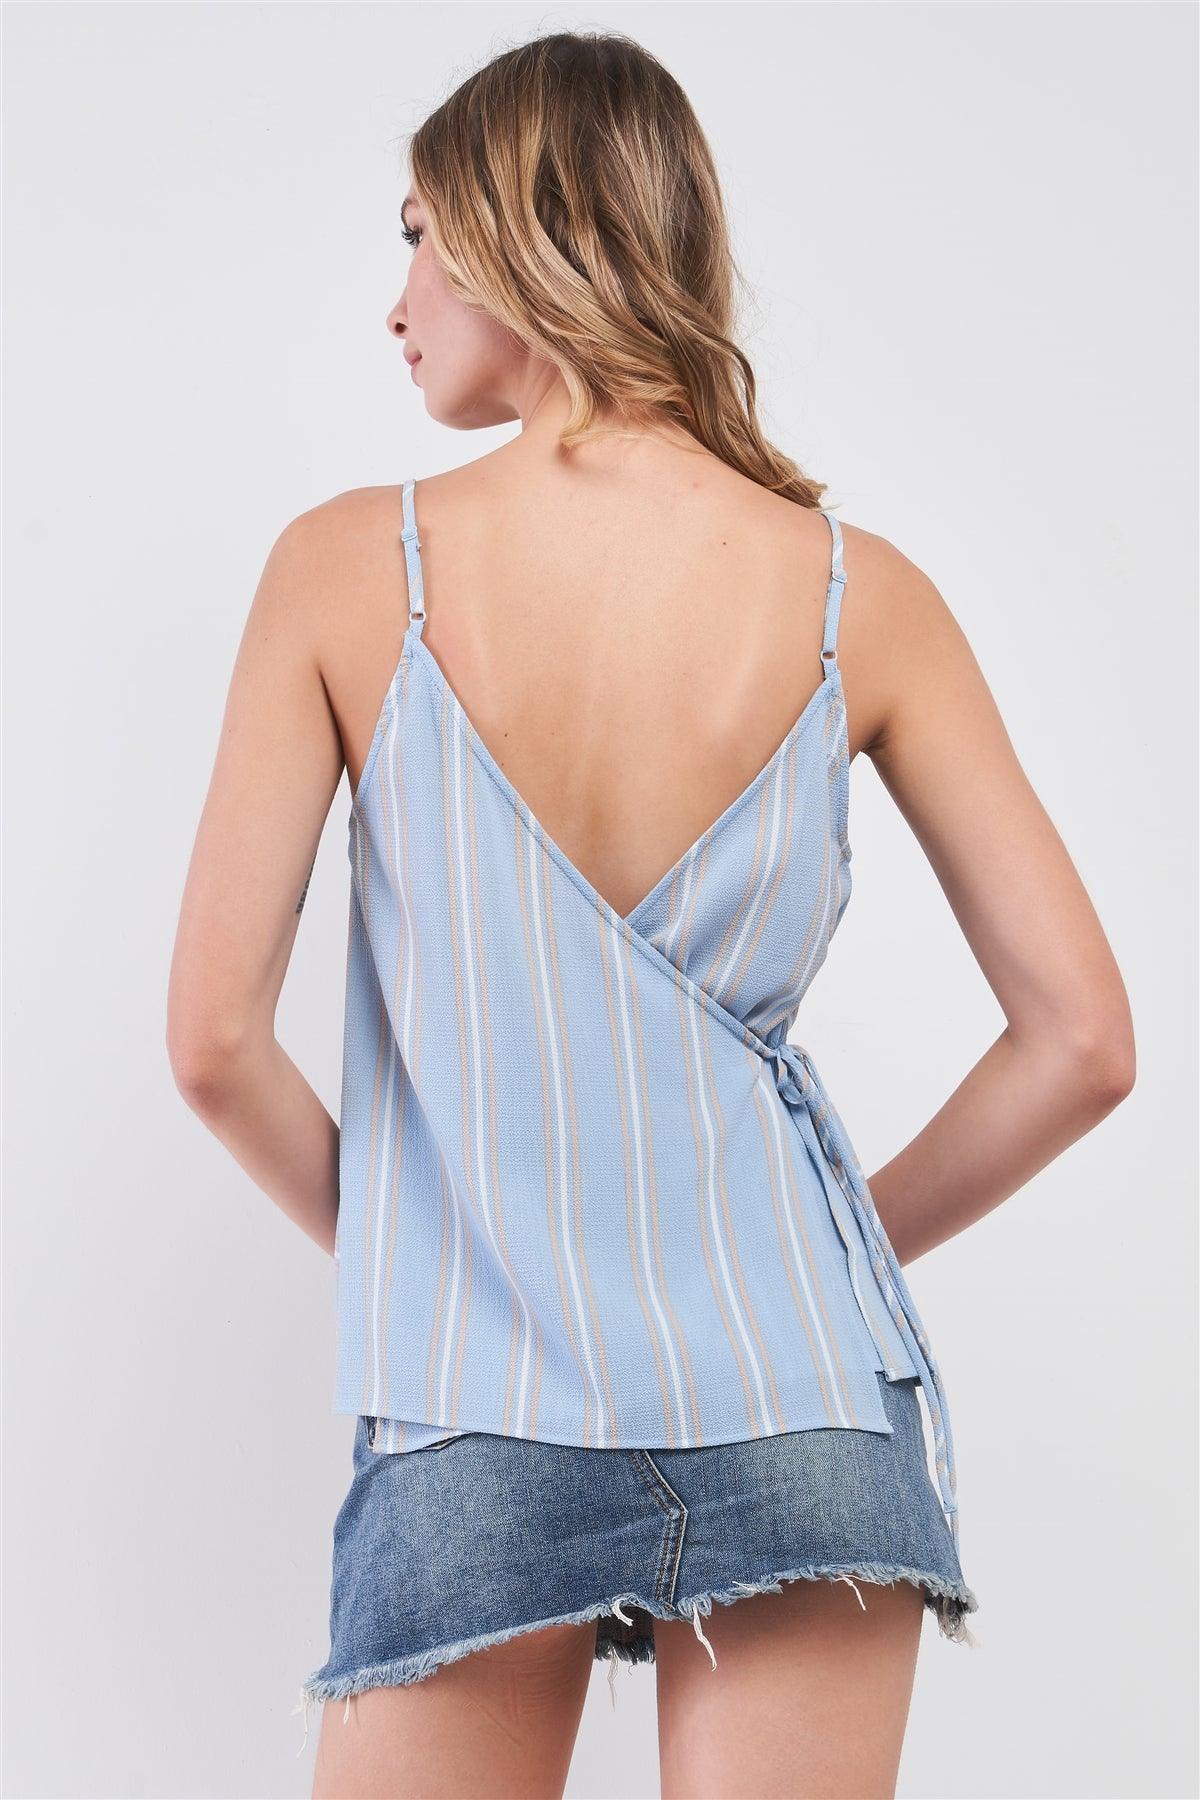 Sky Blue & White Striped V-Neck Sleeveless Back Wrap Self-Tie String Top /1-3-2